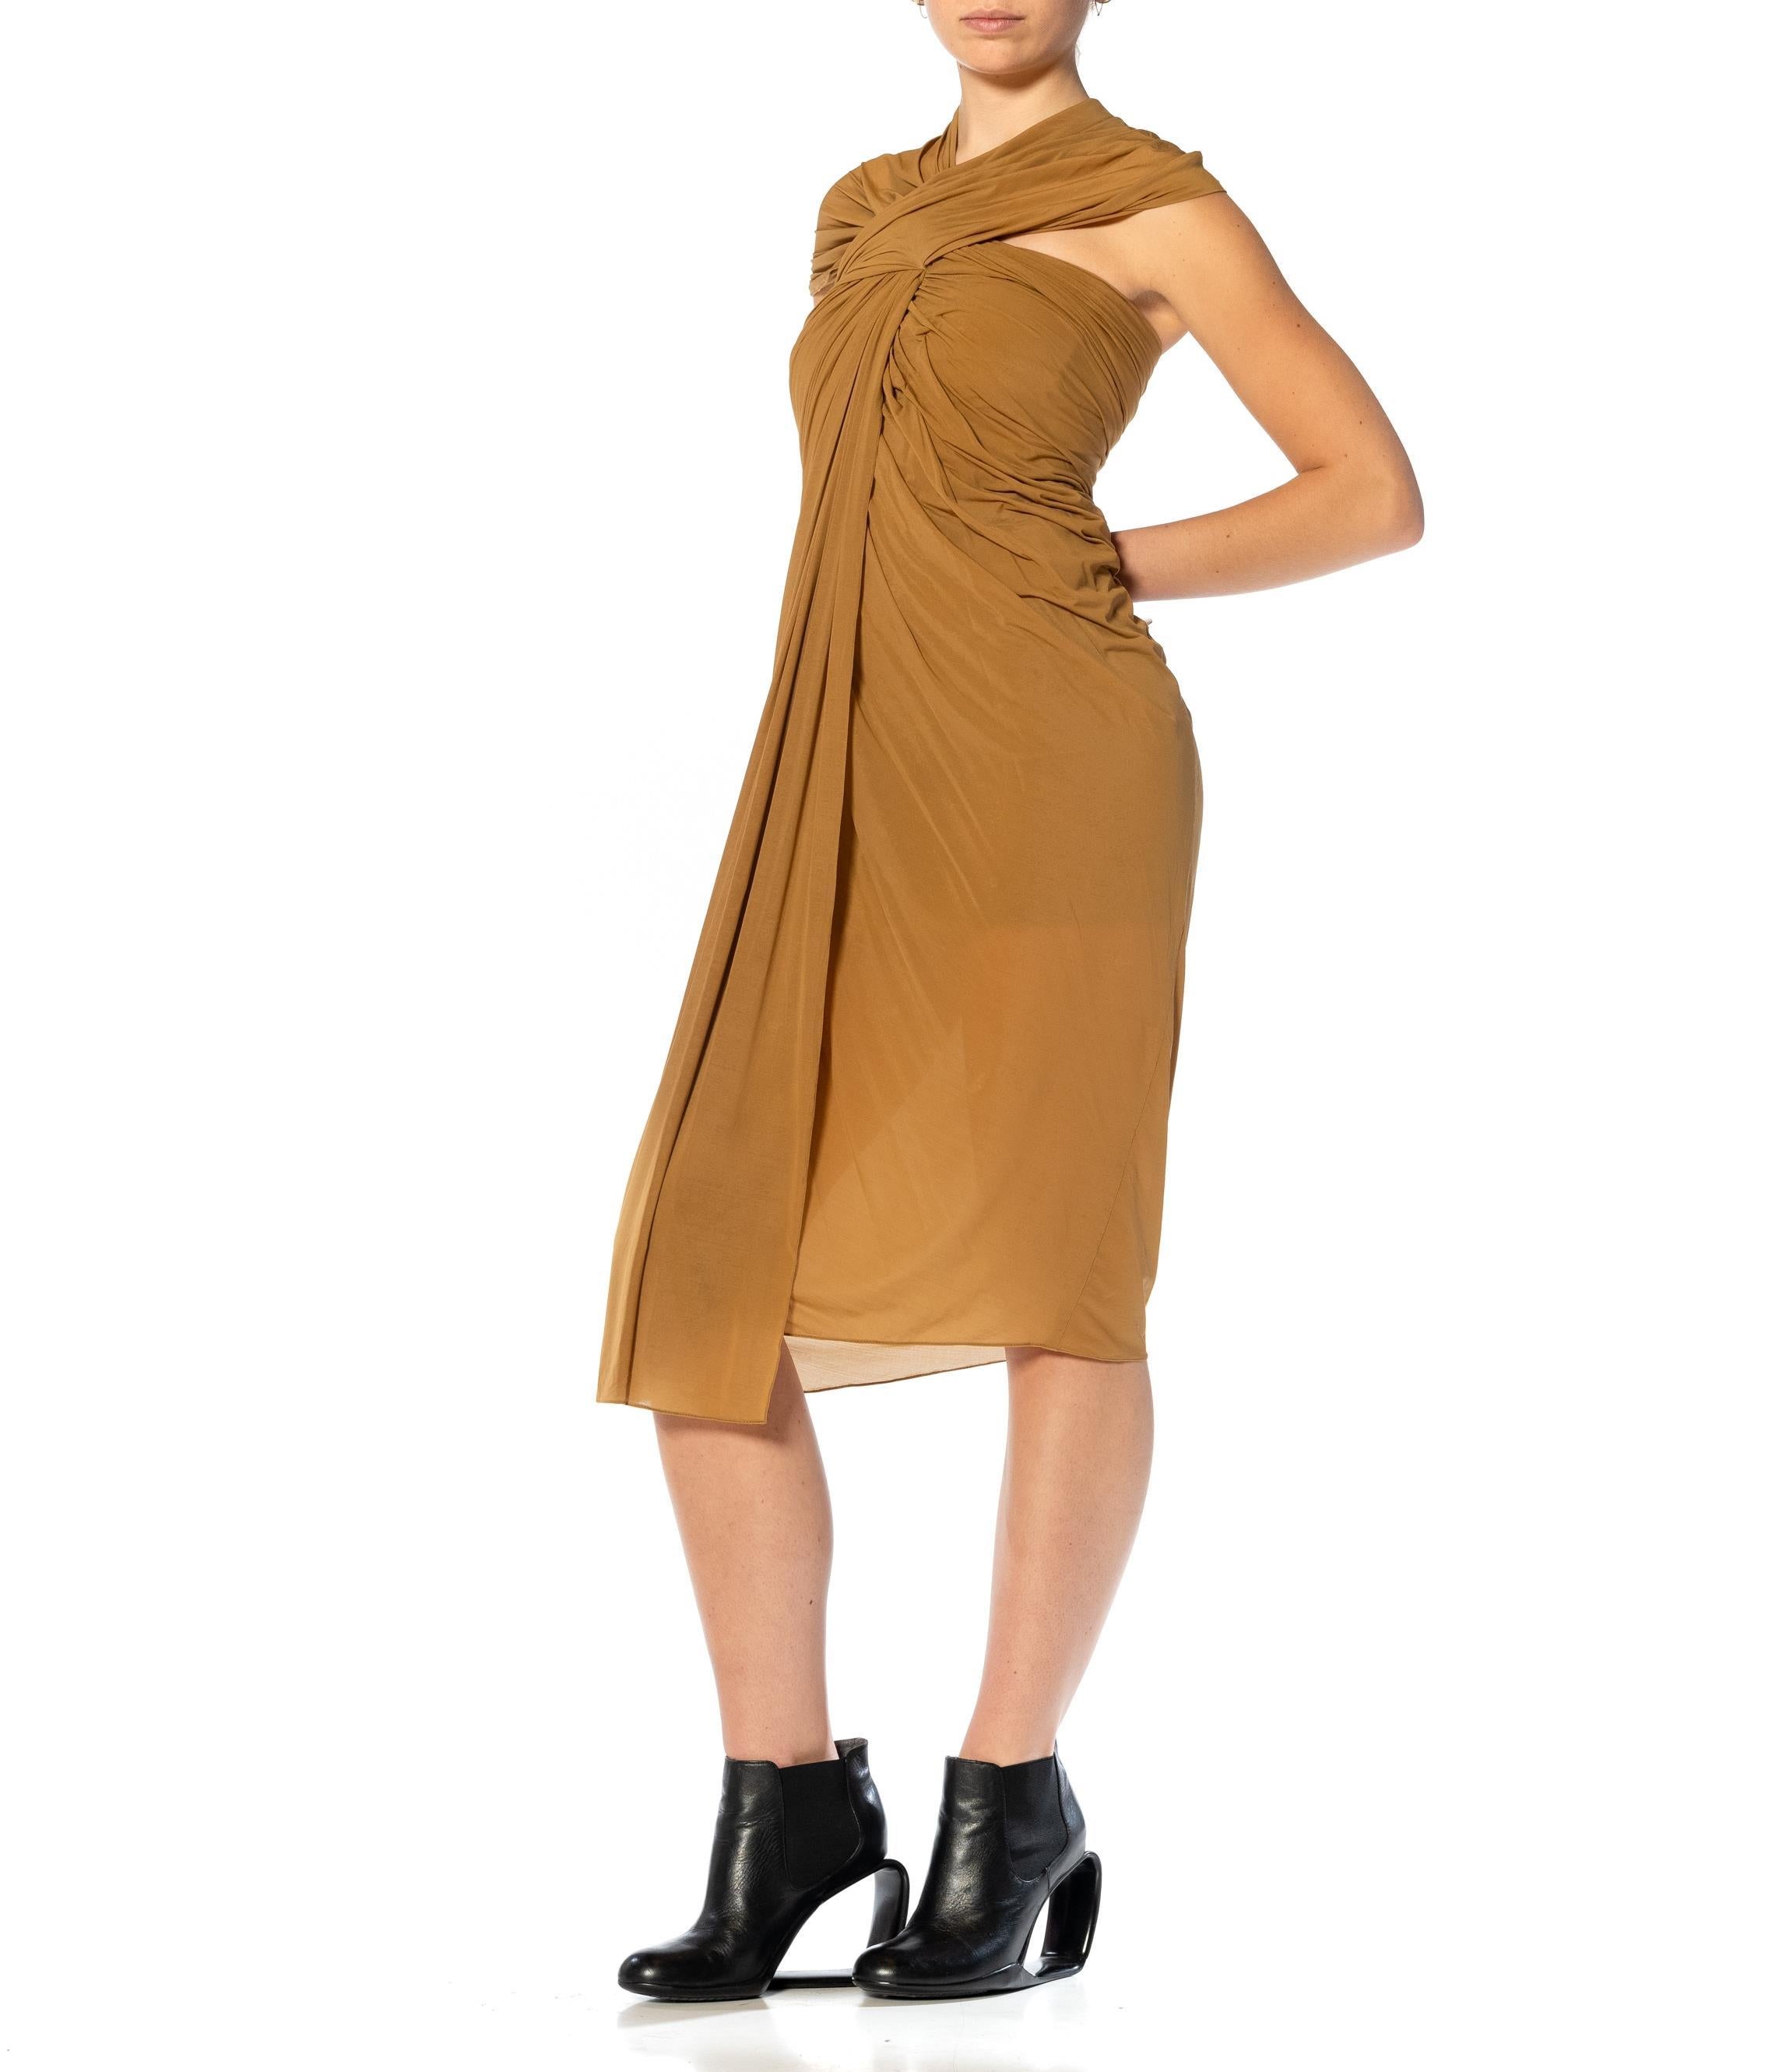 1990S DONNA KARAN Camel Cupro & Spandex Draped One Shoulder Cocktail Dress For Sale 3